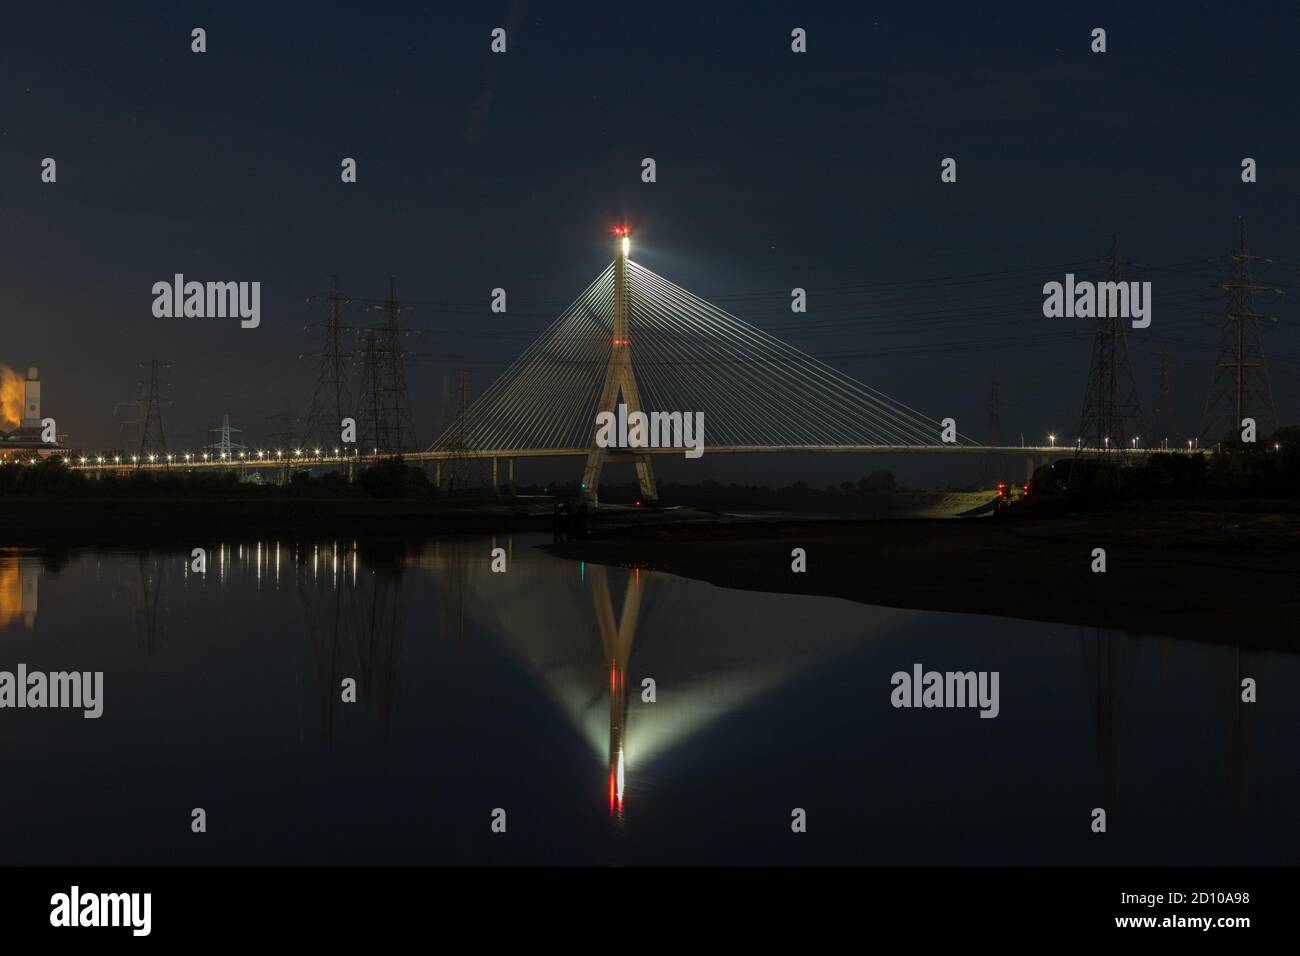 Cable-stay hormigón Flintshire Bridge, iluminado por la noche, sobre el río Dee visto desde el muelle de Connah. Estructura similar a un ventilador reflejada en un estuario espejado Foto de stock